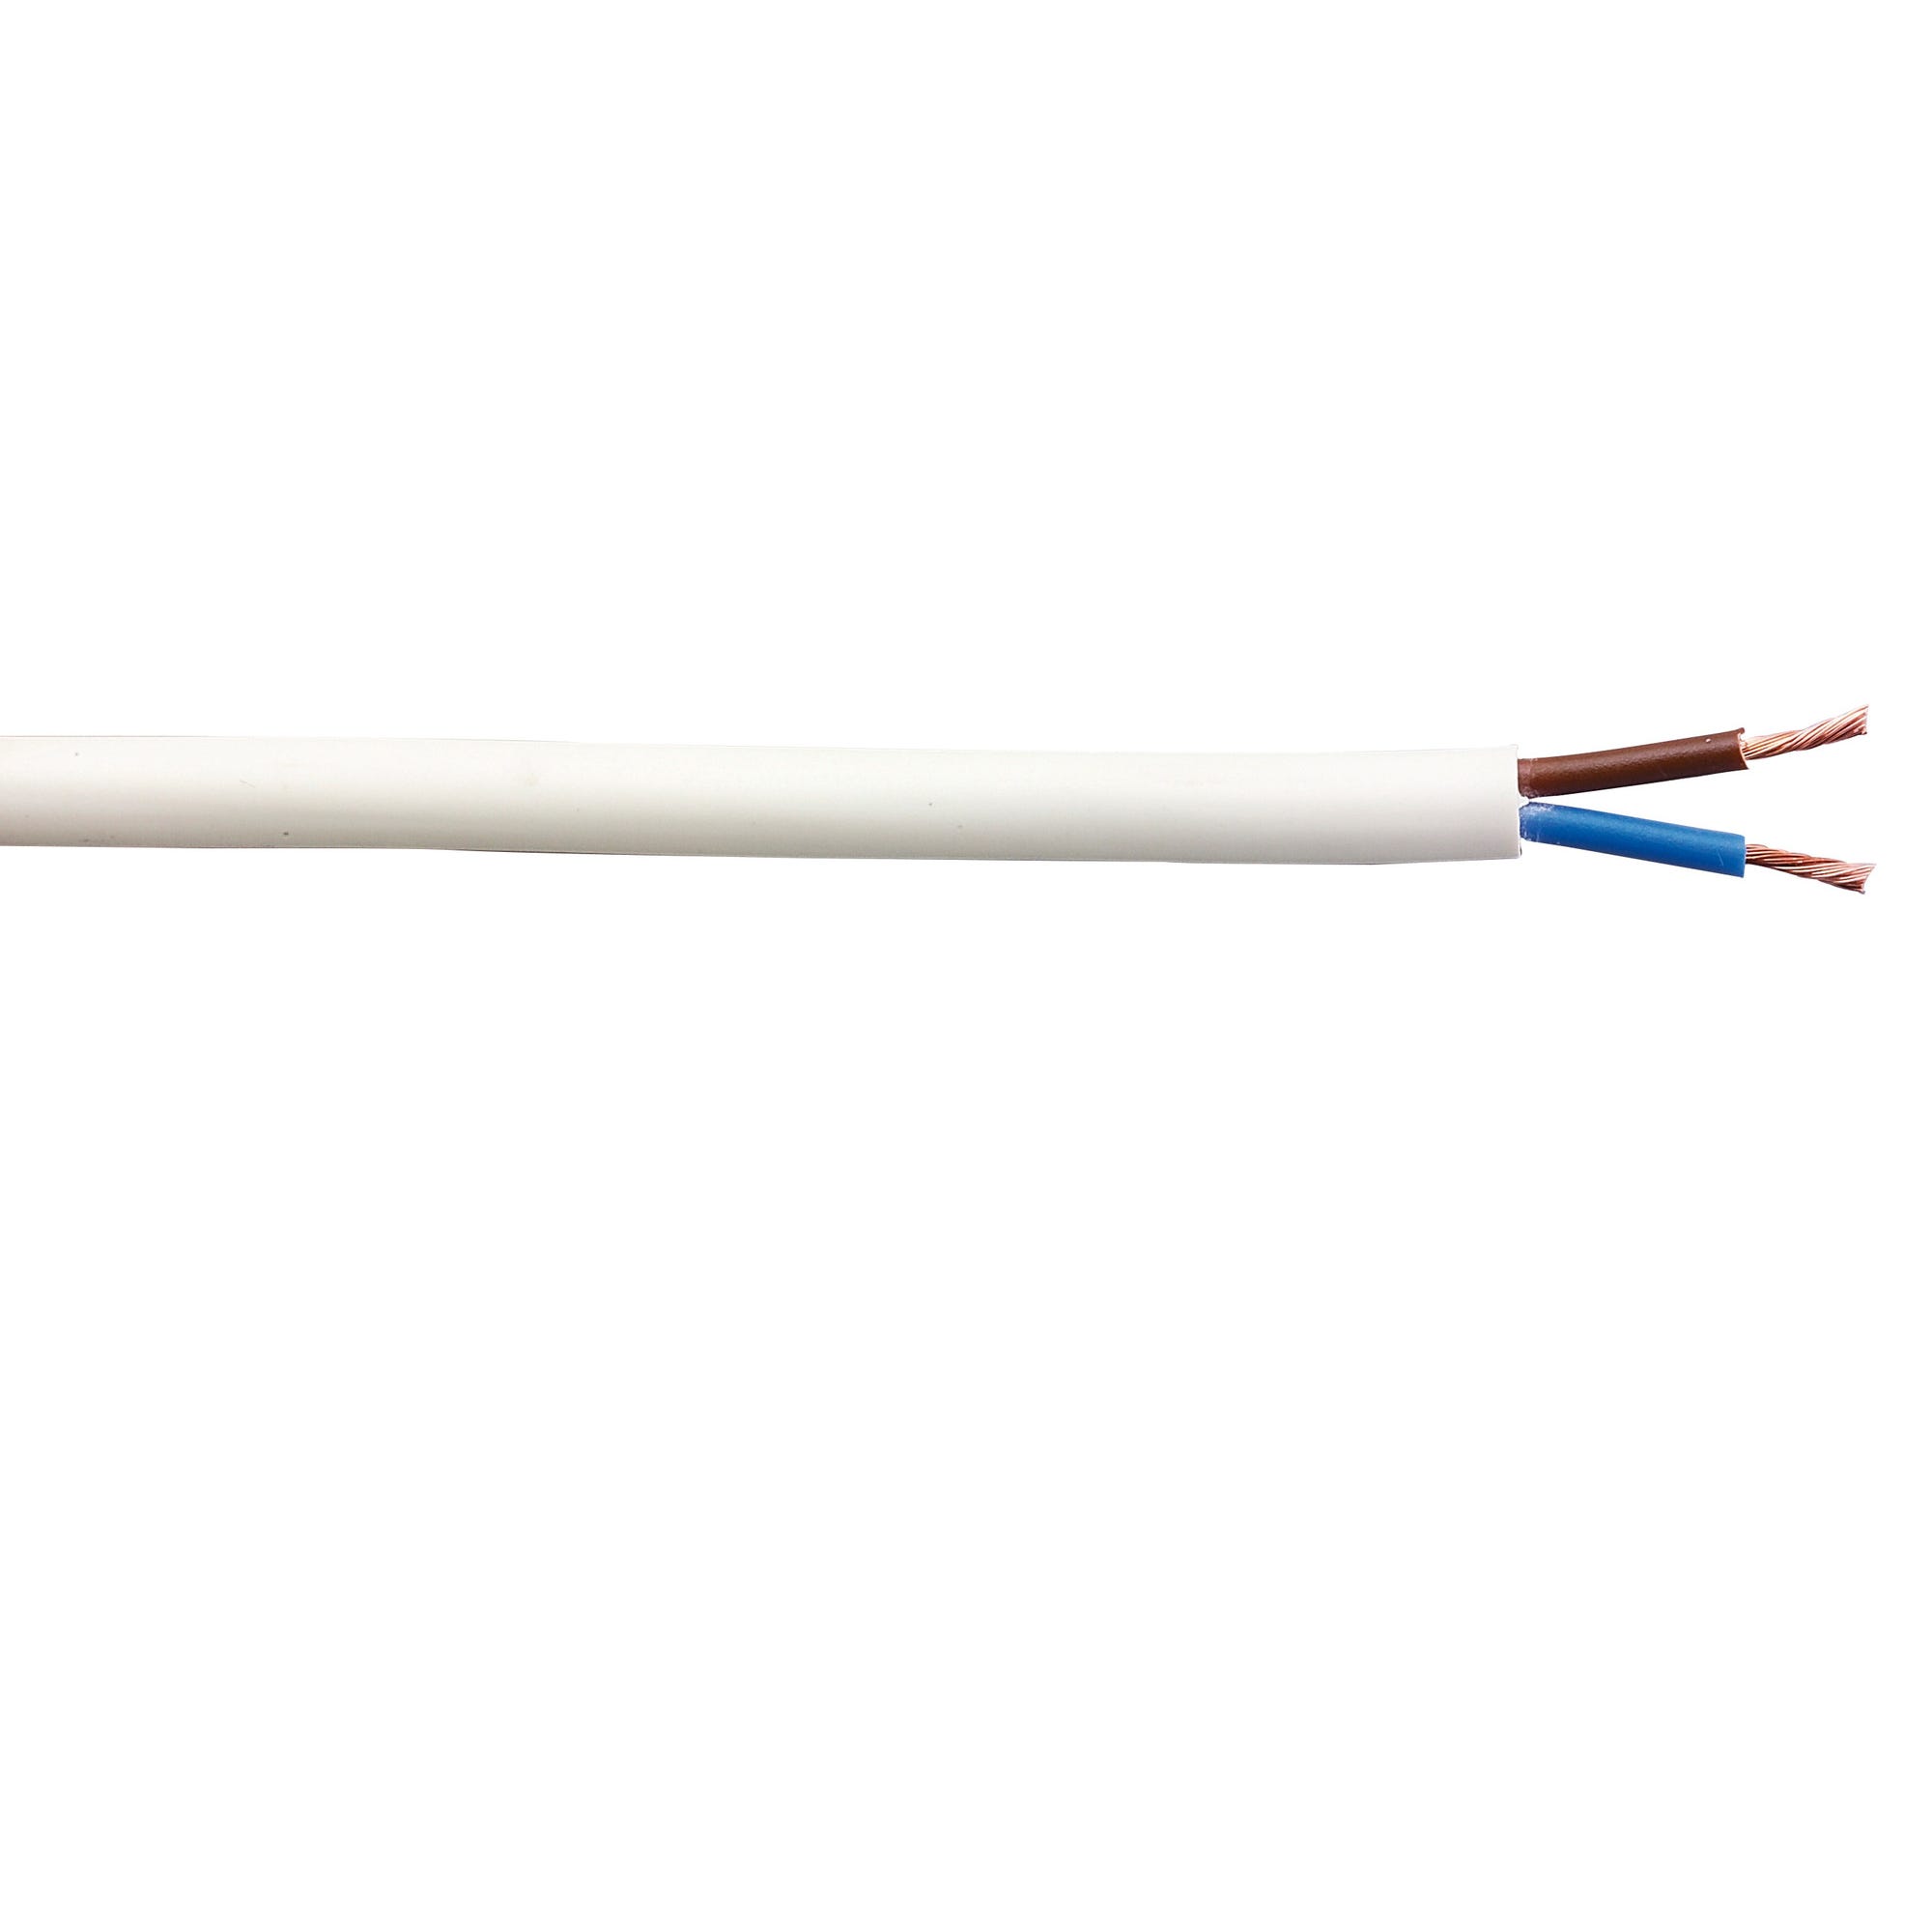 Cable électrique HO5VVF 2x1 mm² blanc 10 m 1